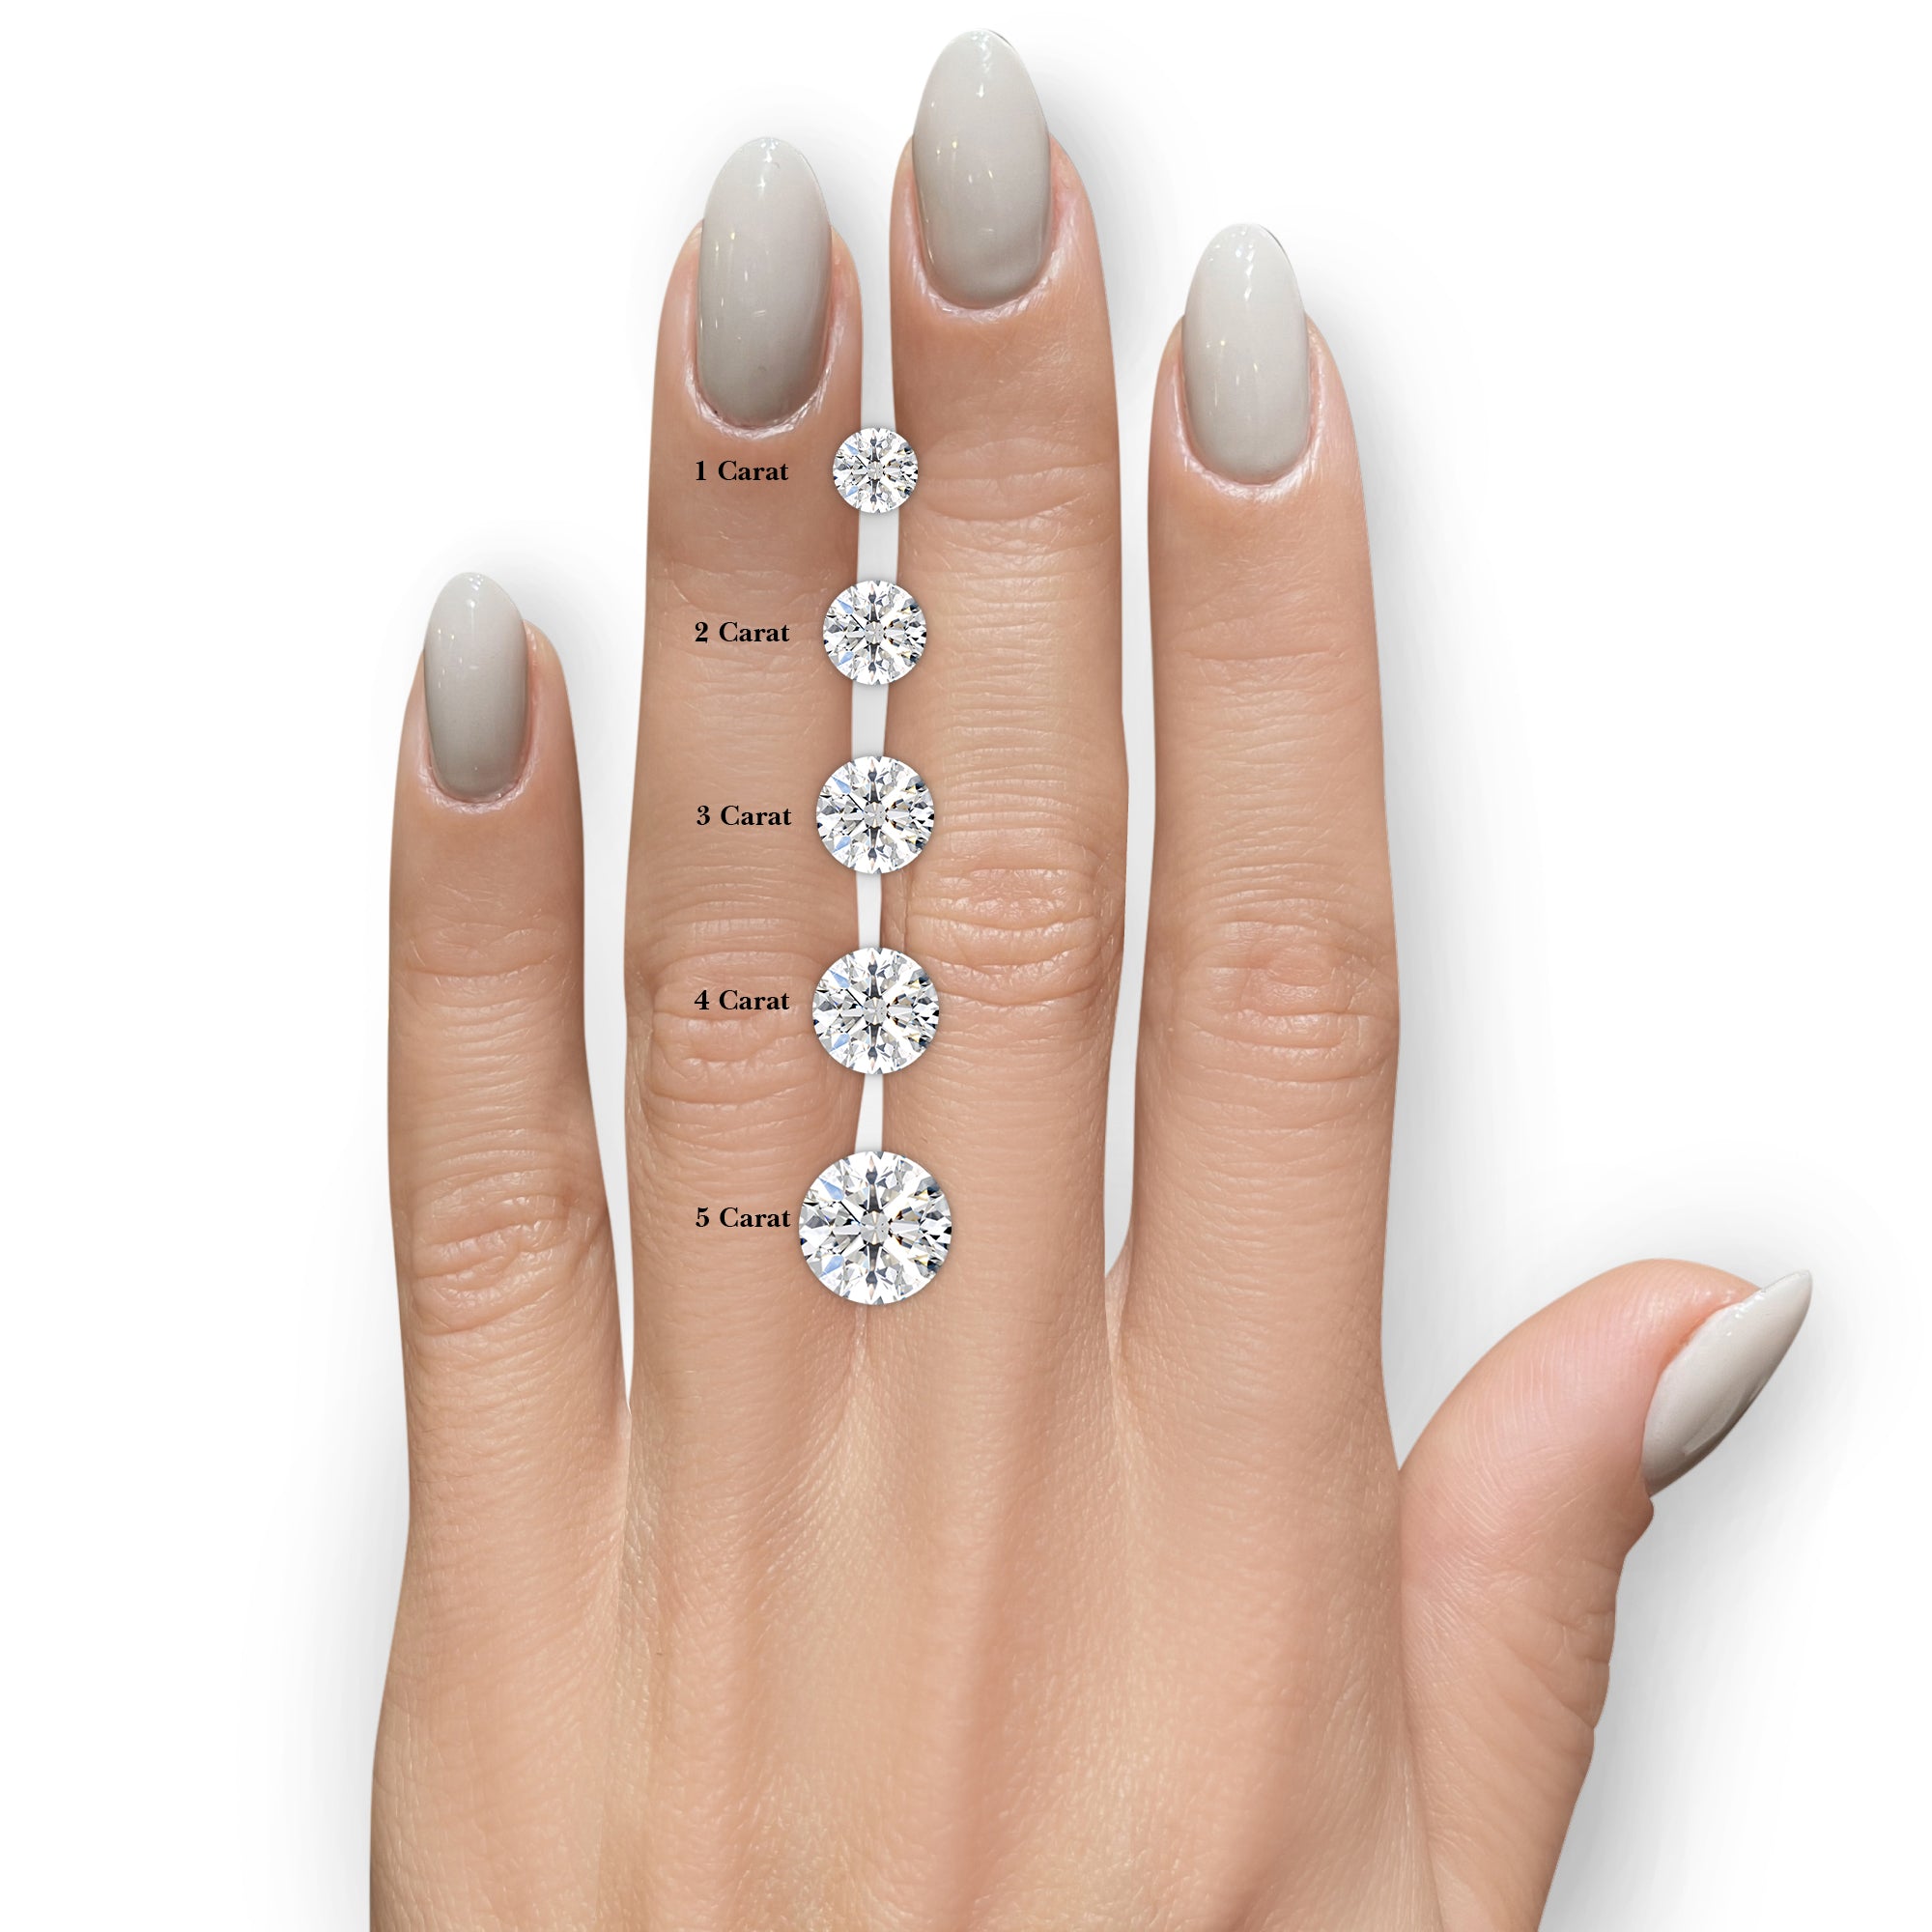 Makenzi Diamond Engagement Ring -18K White Gold